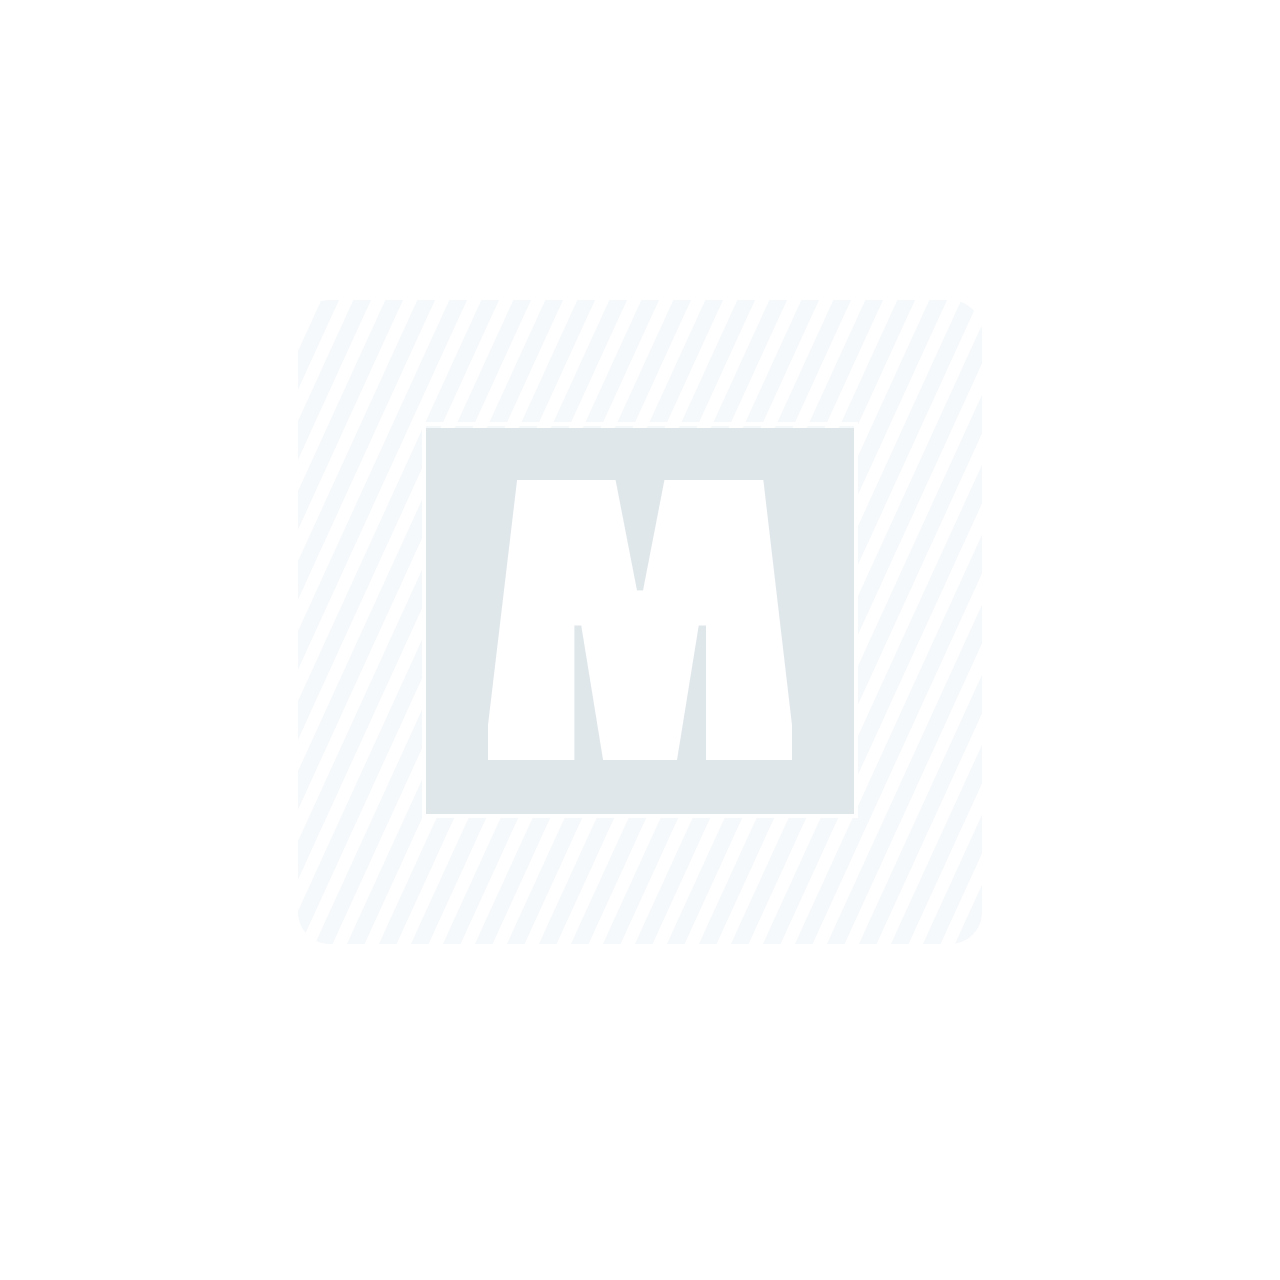 Manchon OUTILPARFAIT Antigoutte Aqualiss'13 - 110mm - Boite de 10 - 4937110